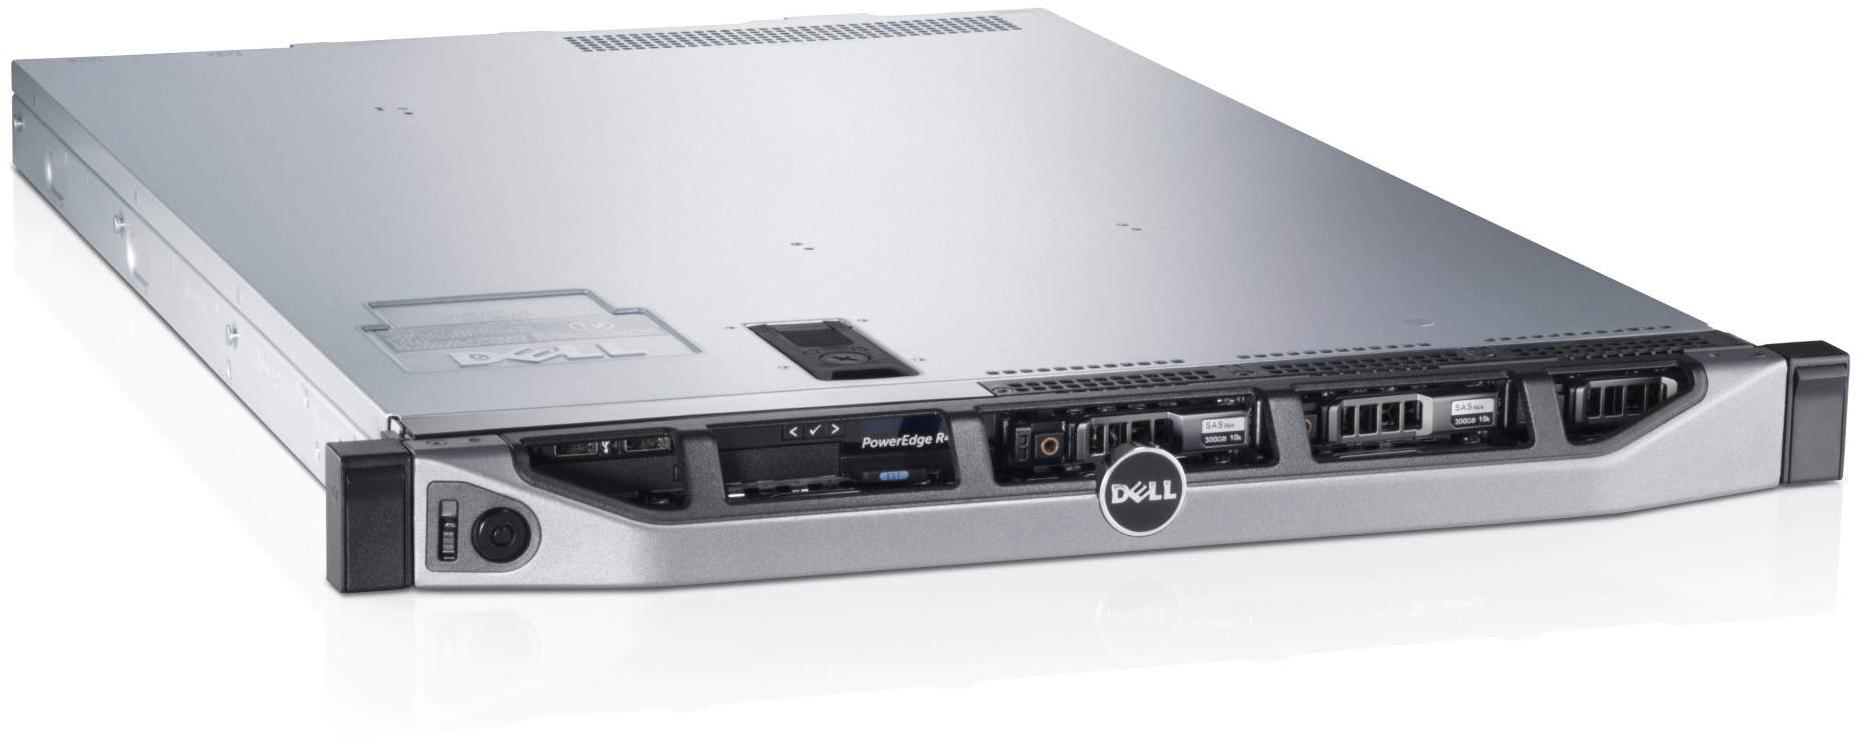     Dell PowerEdge R620 (210-39504-16)  2